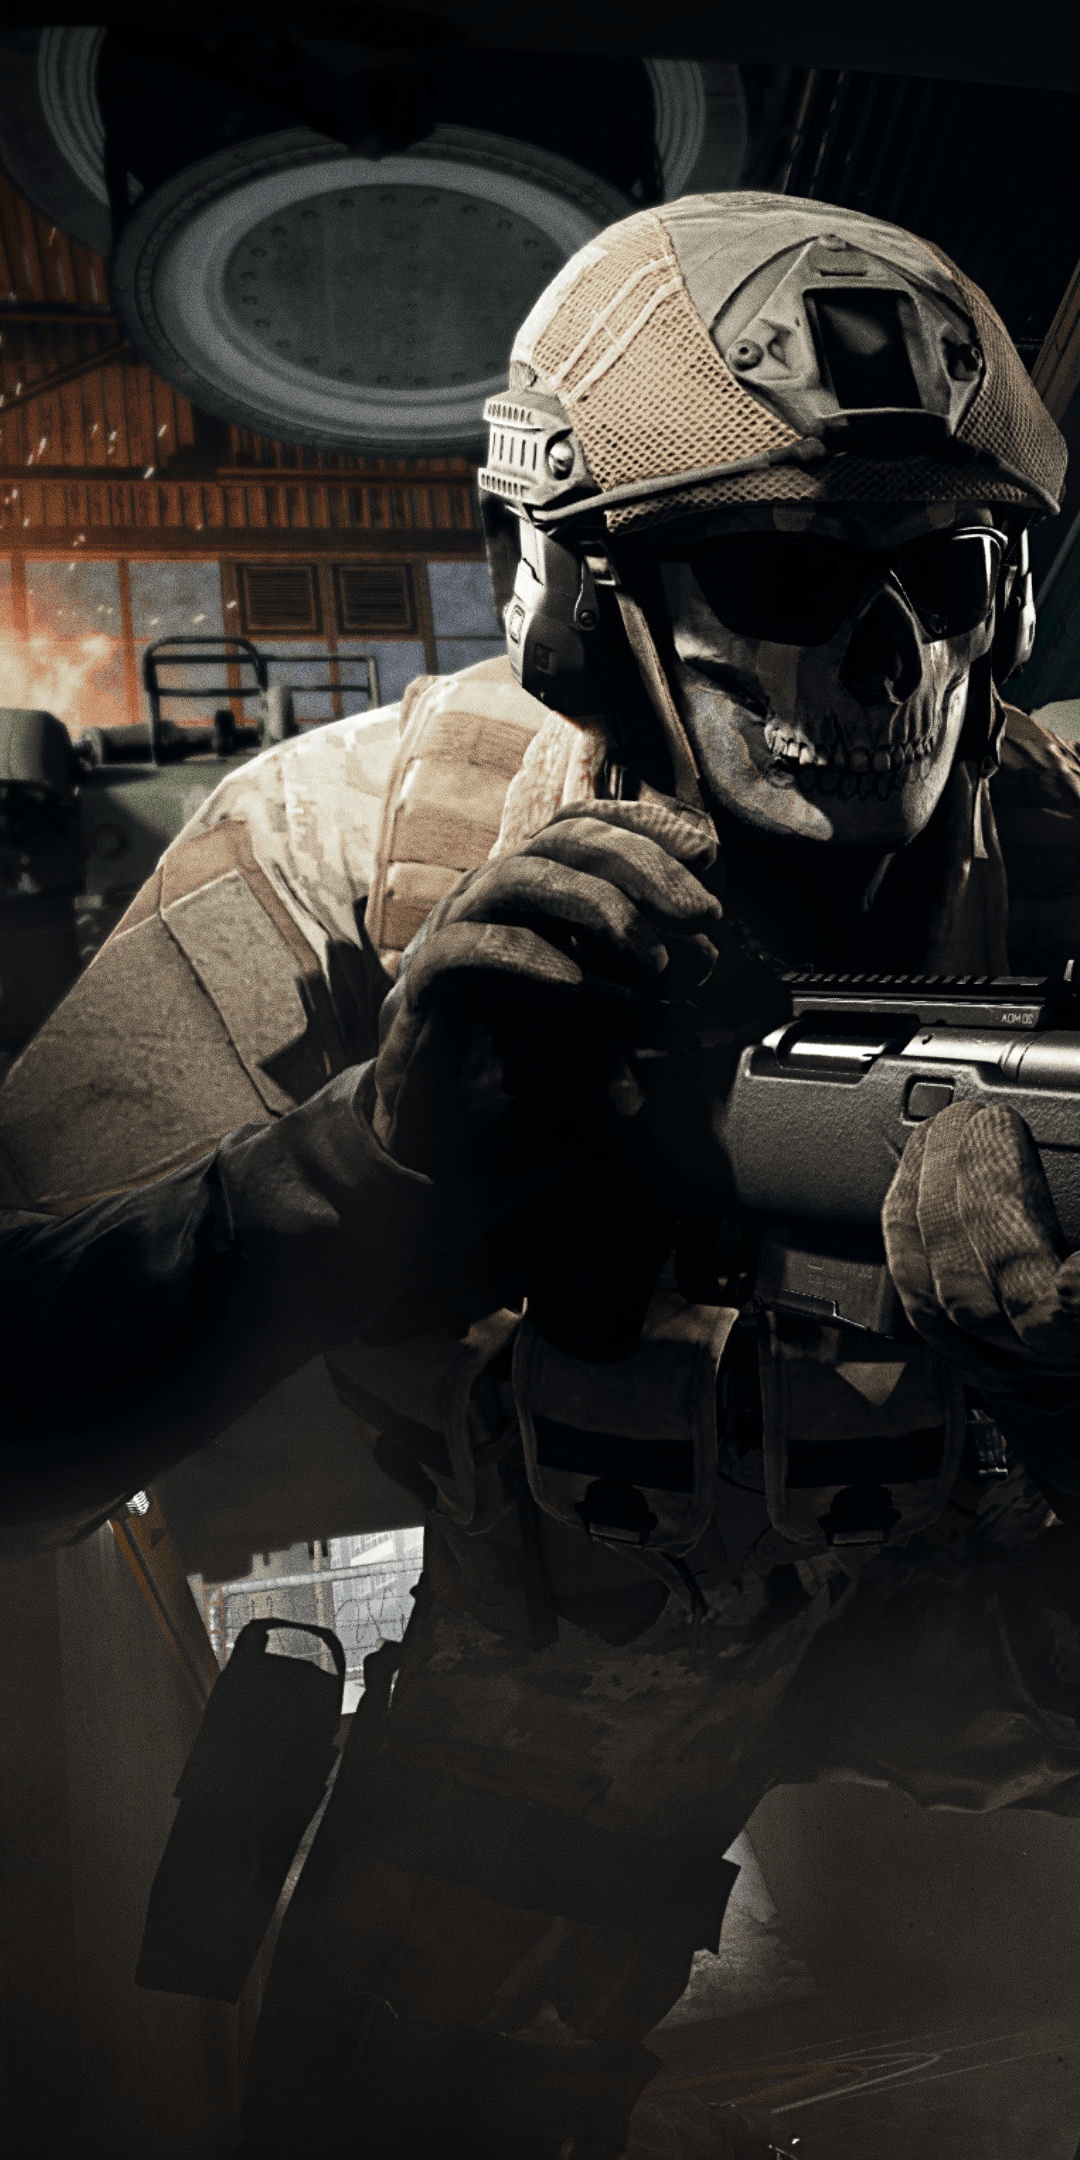 Call of Duty: Modern Warfare Wallpaper 4K, Call of Duty Warzone, Online